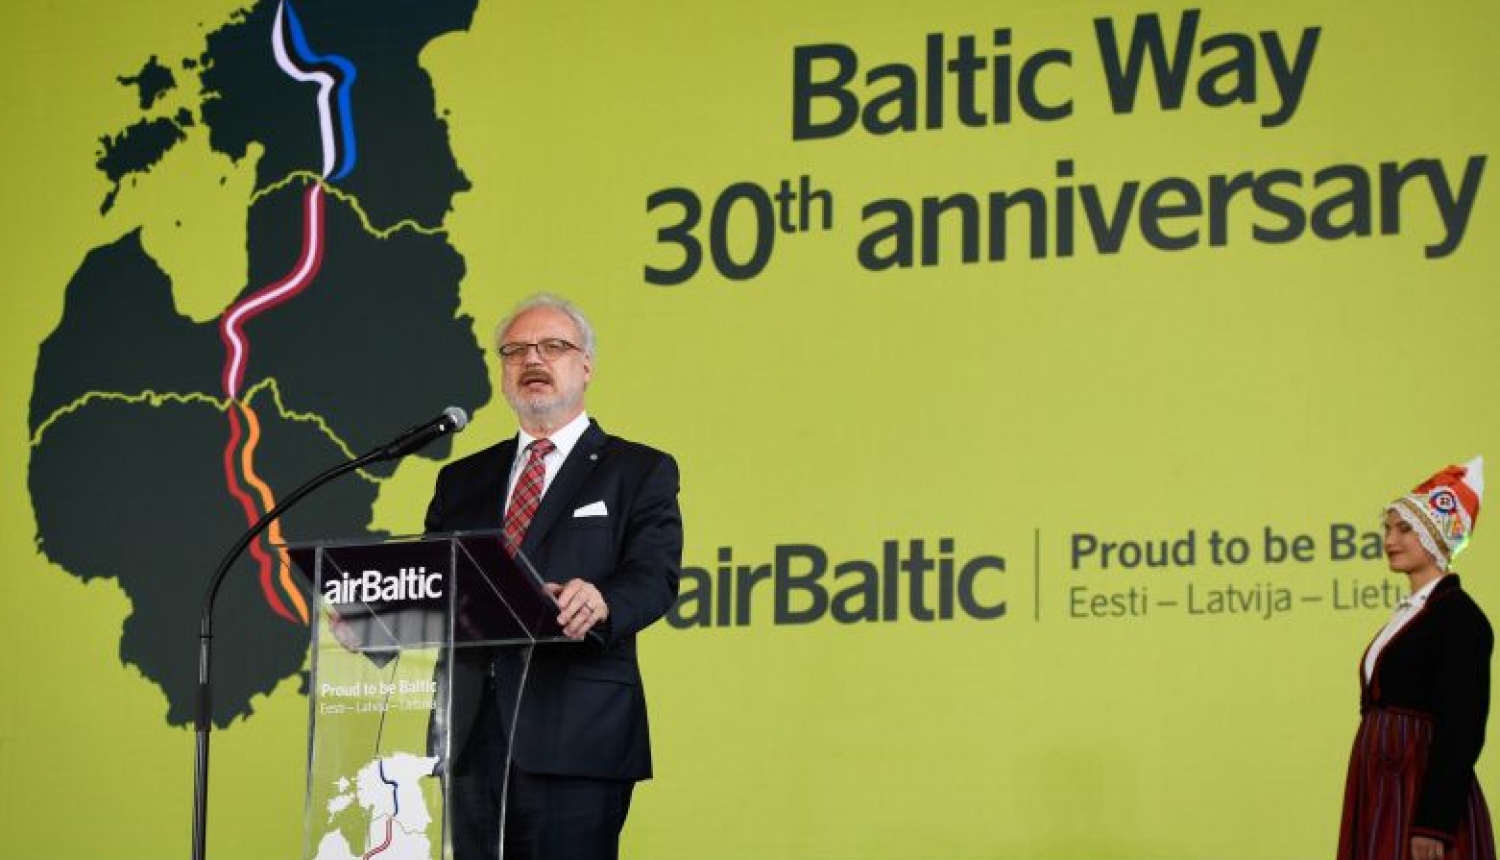 Valsts prezidenta Egila Levita uzruna airBaltic rīkotajā svinīgajā pasākumā par godu Baltijas ceļa 30. gadadienai